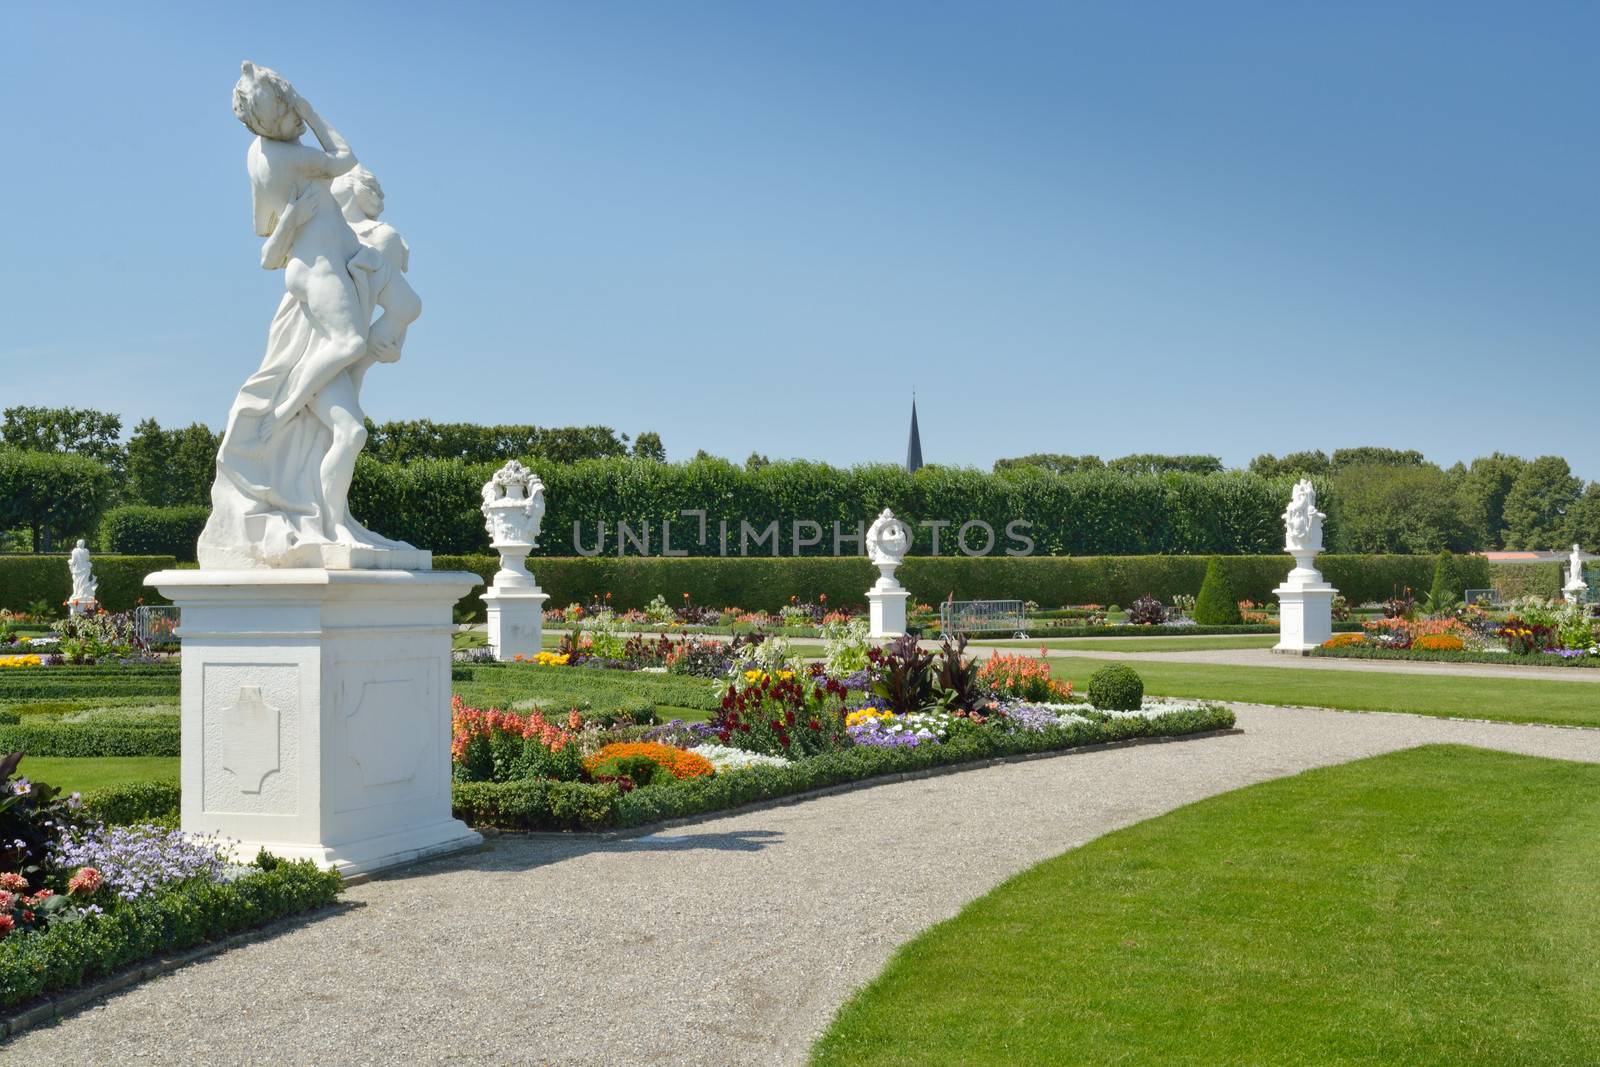 Garden with sculptures in Herrenhausen Gardens, Hanover, Germany by velislava